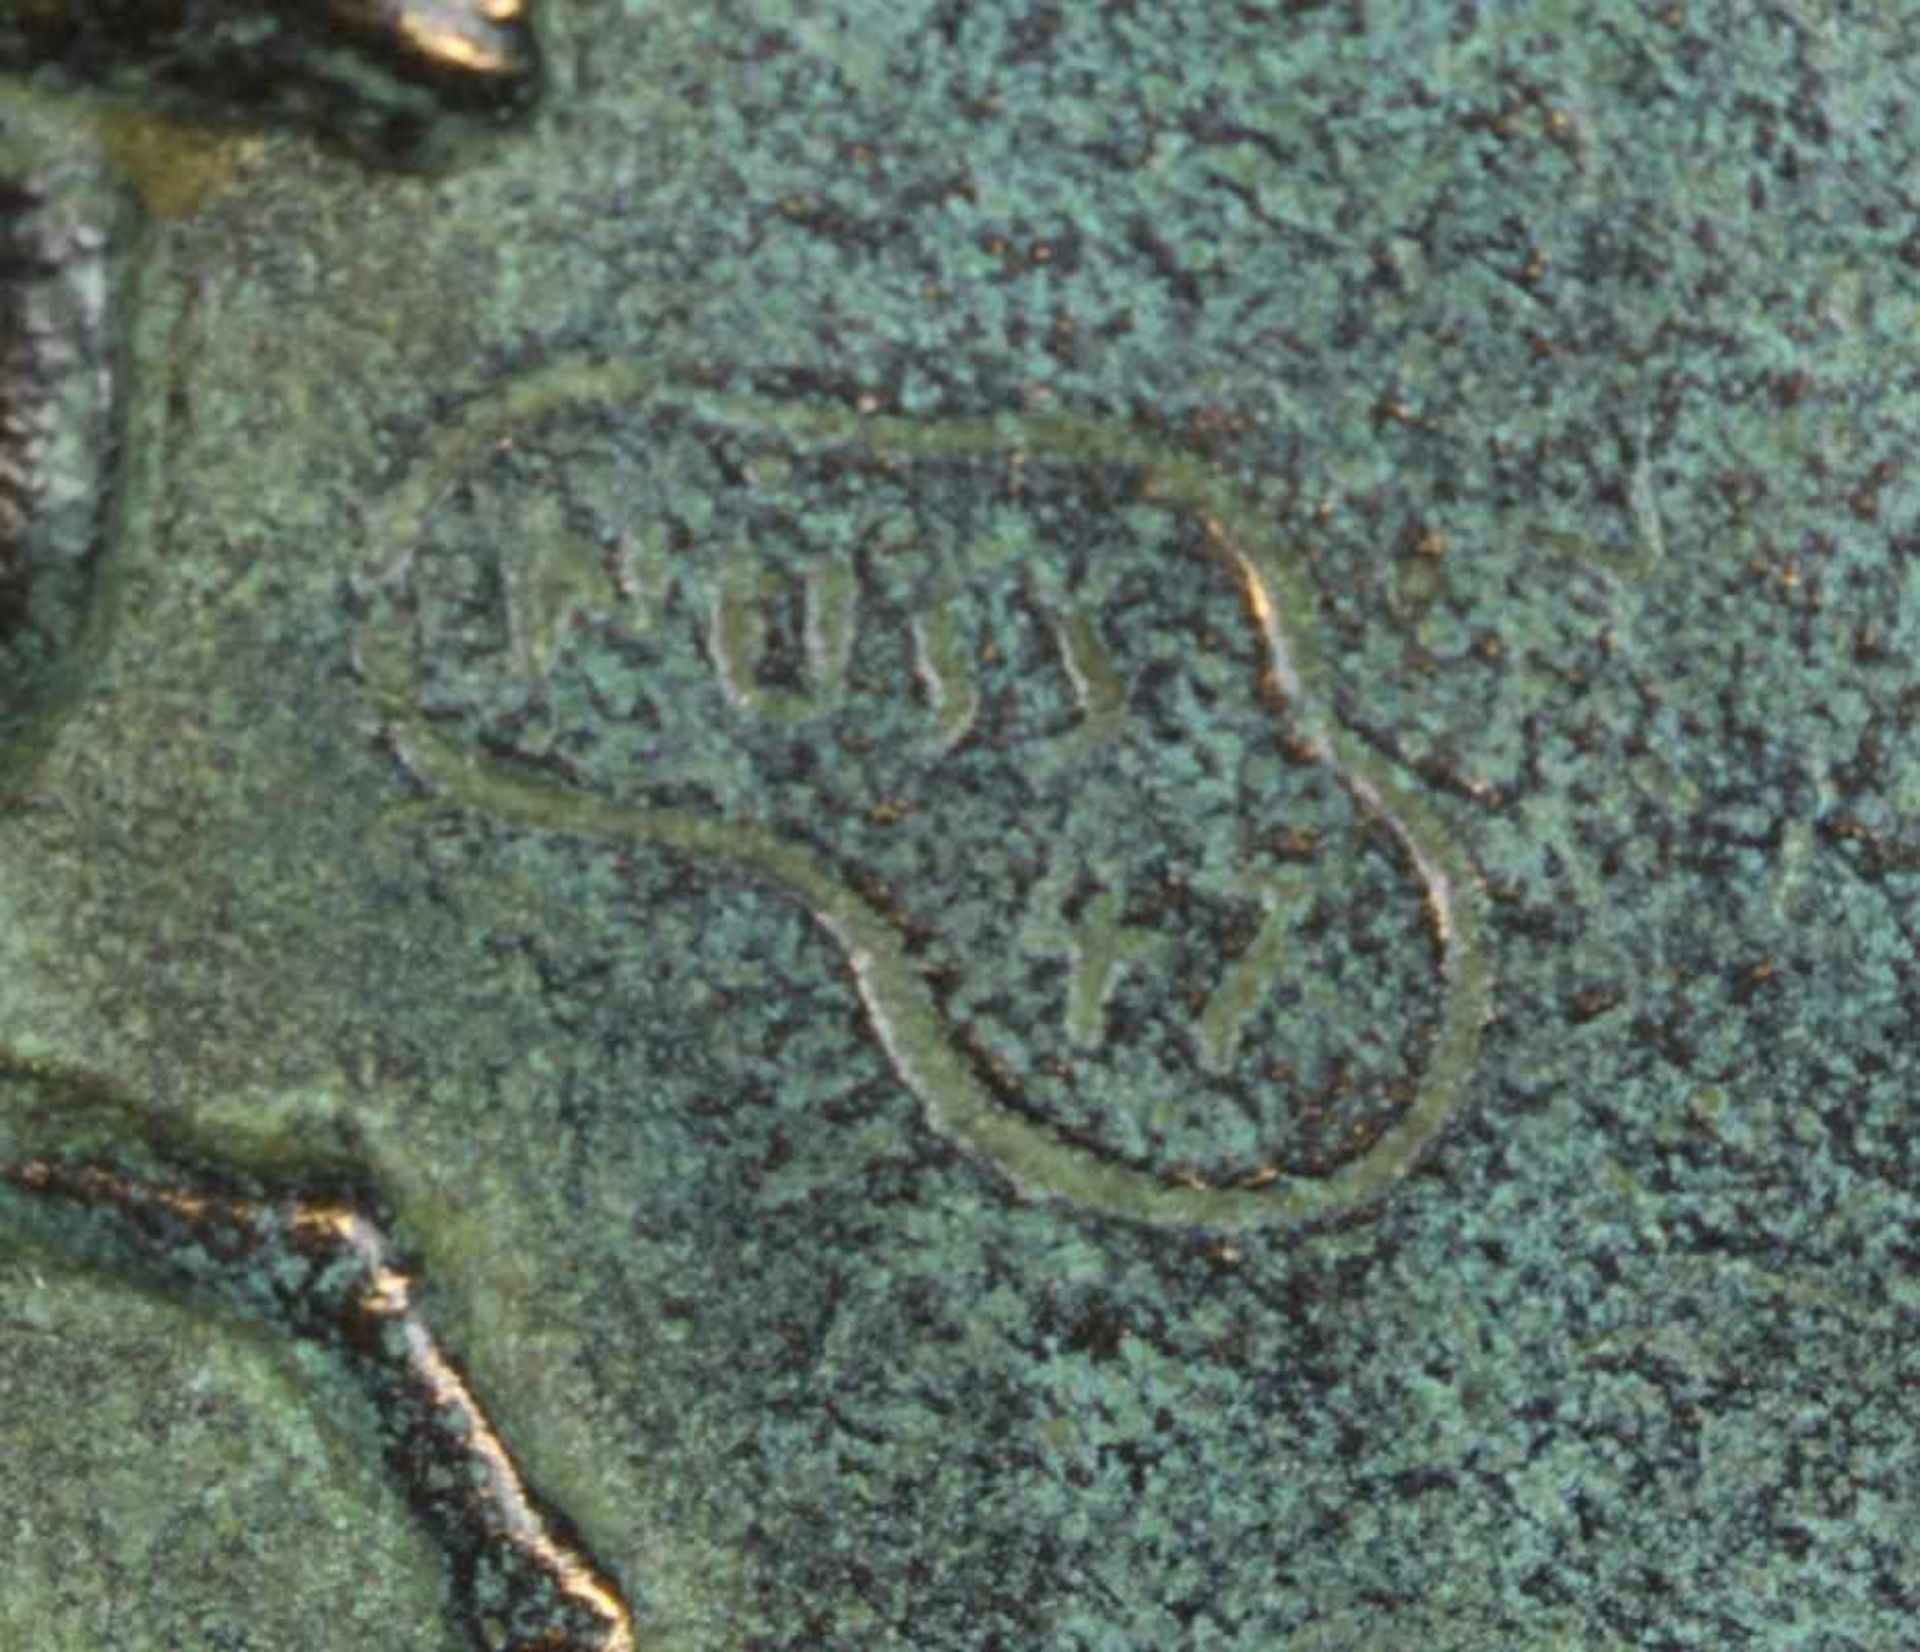 Bronze-Wandteller, "Adam und Eva", Nuss, Fritz, 1907 - 1999, im Spiegel - Bild 3 aus 3